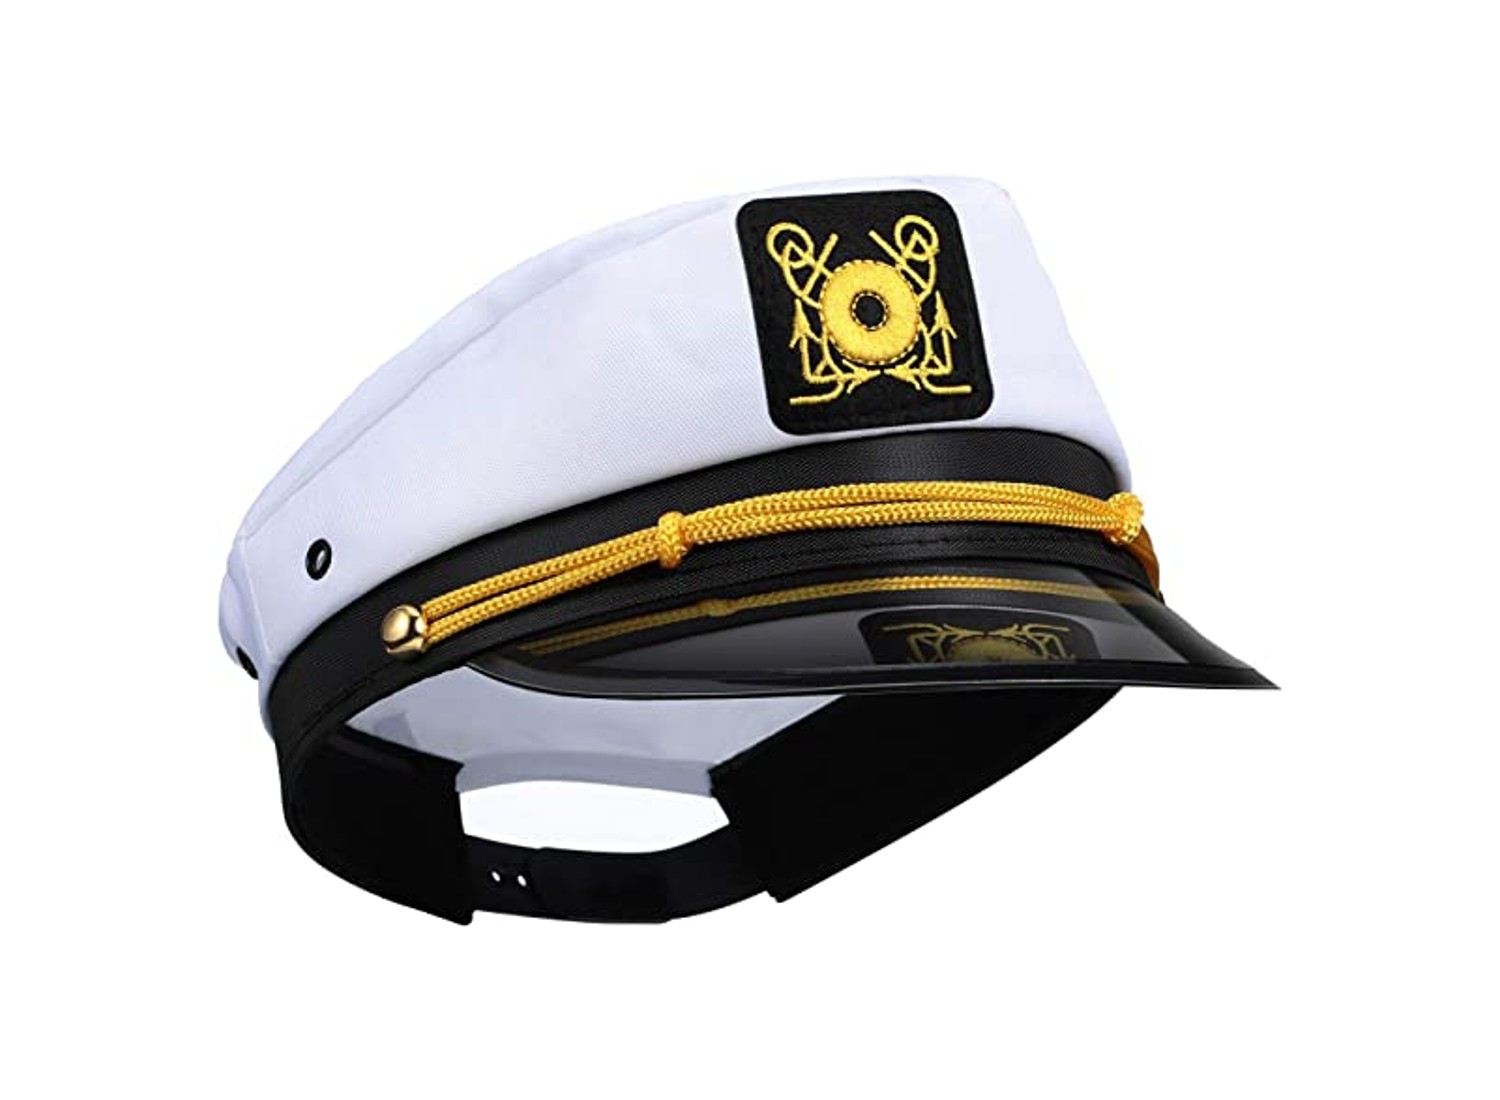 captain sailing hat review